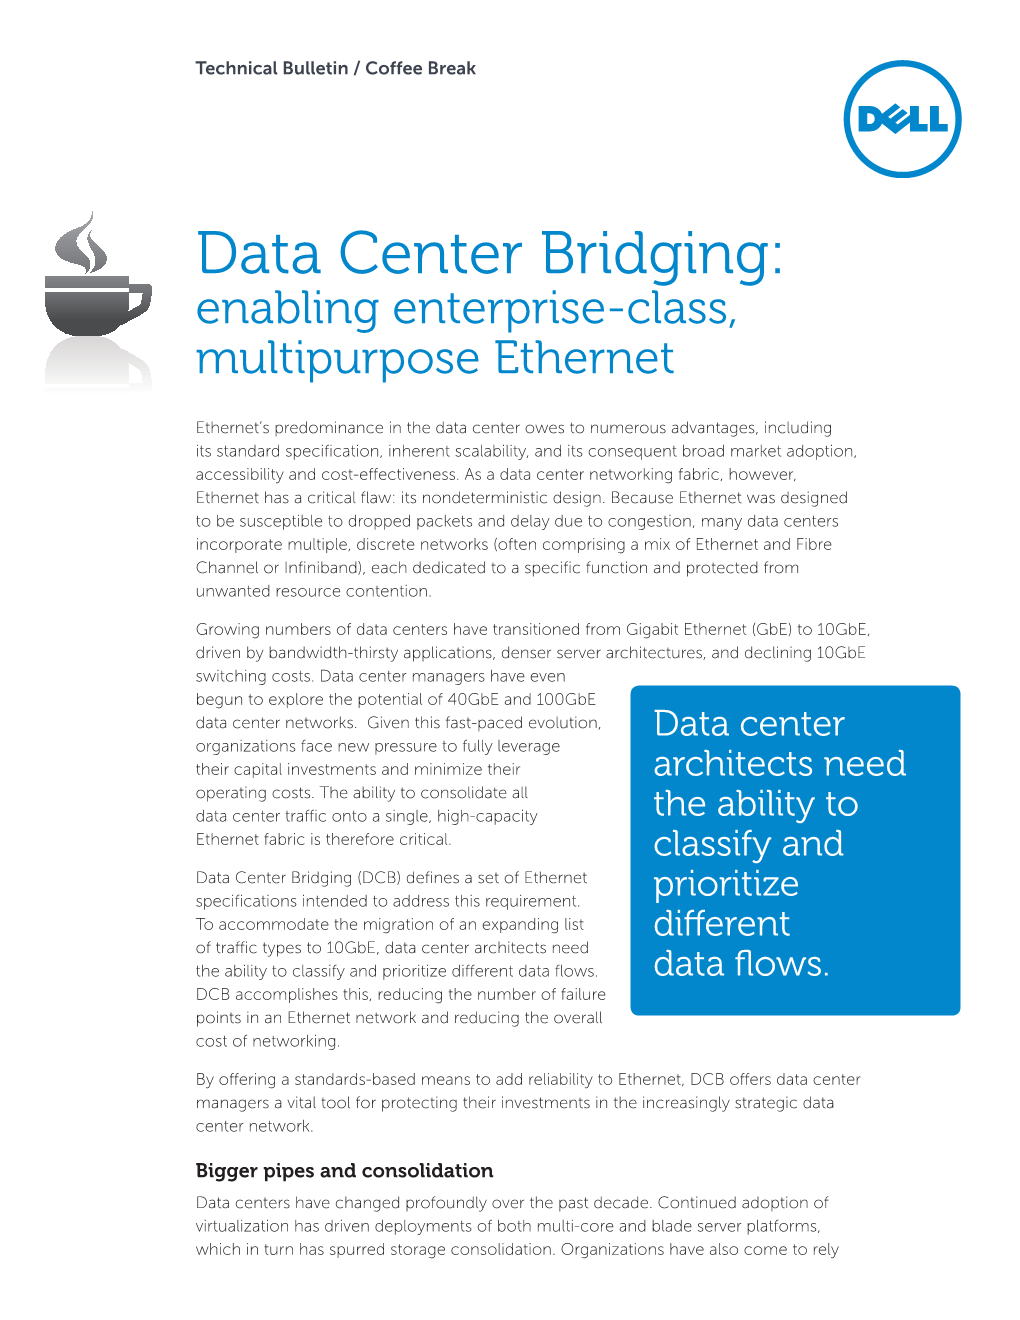 Data Center Bridging: Enabling Enterprise-Class, Multipurpose Ethernet